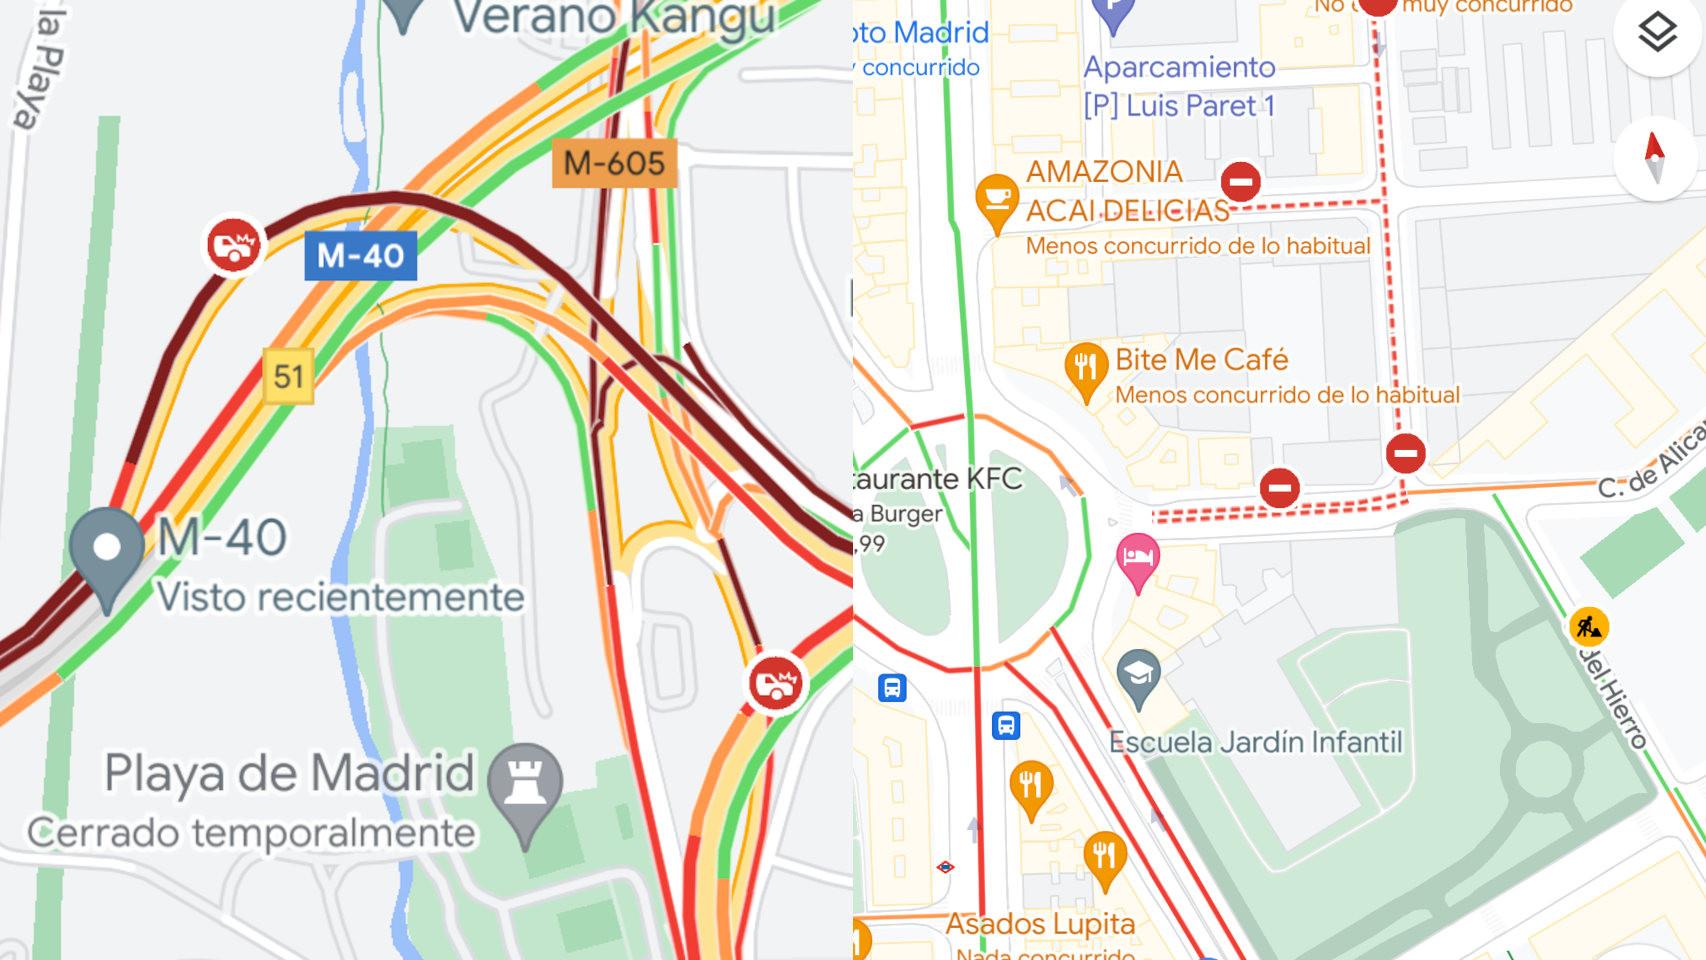 Google Maps es capaz de mostrar accidentes (izq) y calles cortadas (der) en tiempo real